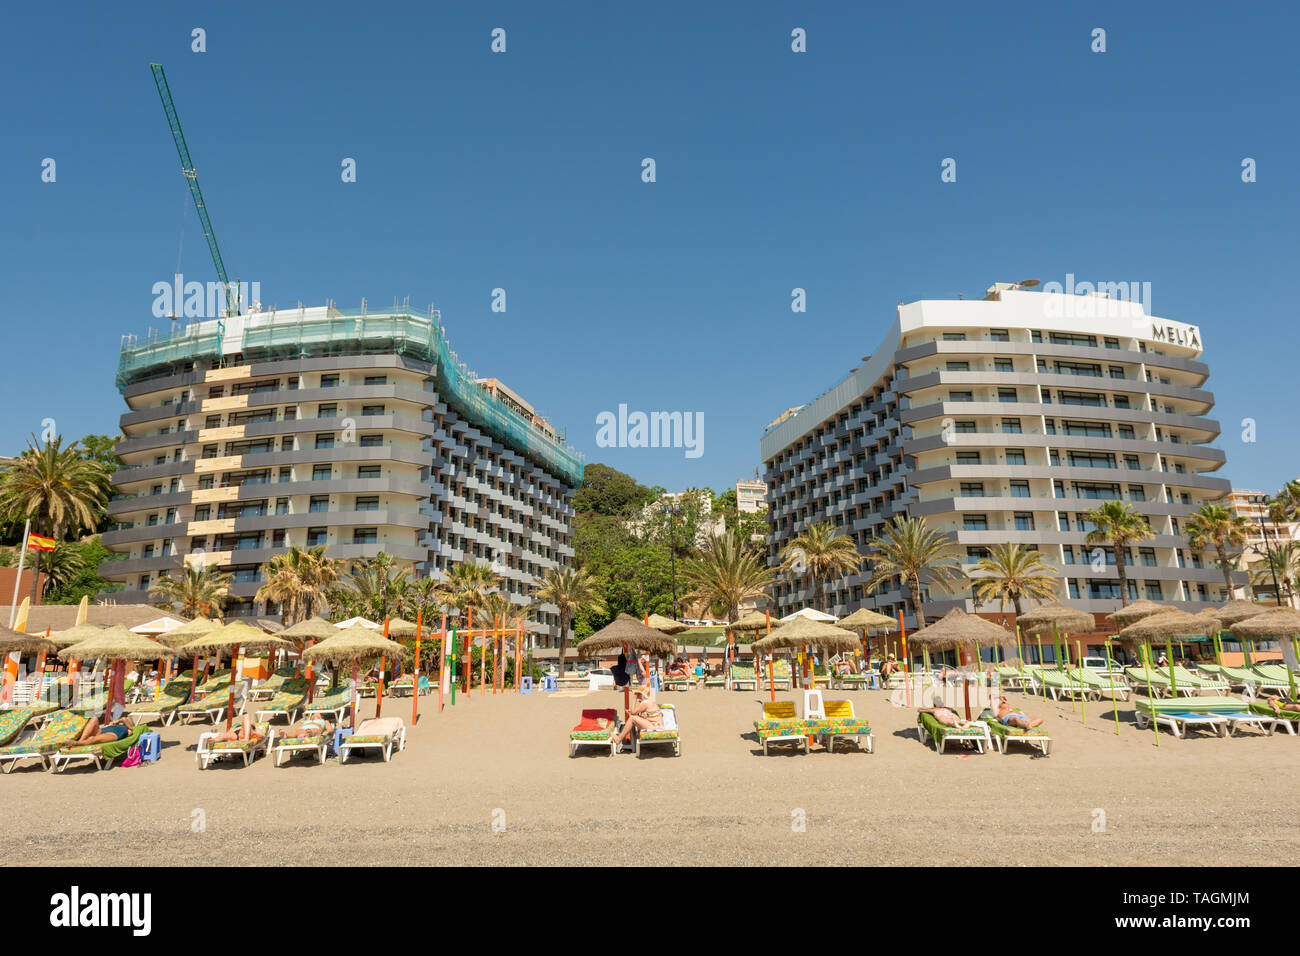 Image miroir 1 bâtiments de l'hôtel appartenant au l'hôtel Melia chaîne sur le front de mer de Torremolinos, Costa del Sol, Espagne Banque D'Images